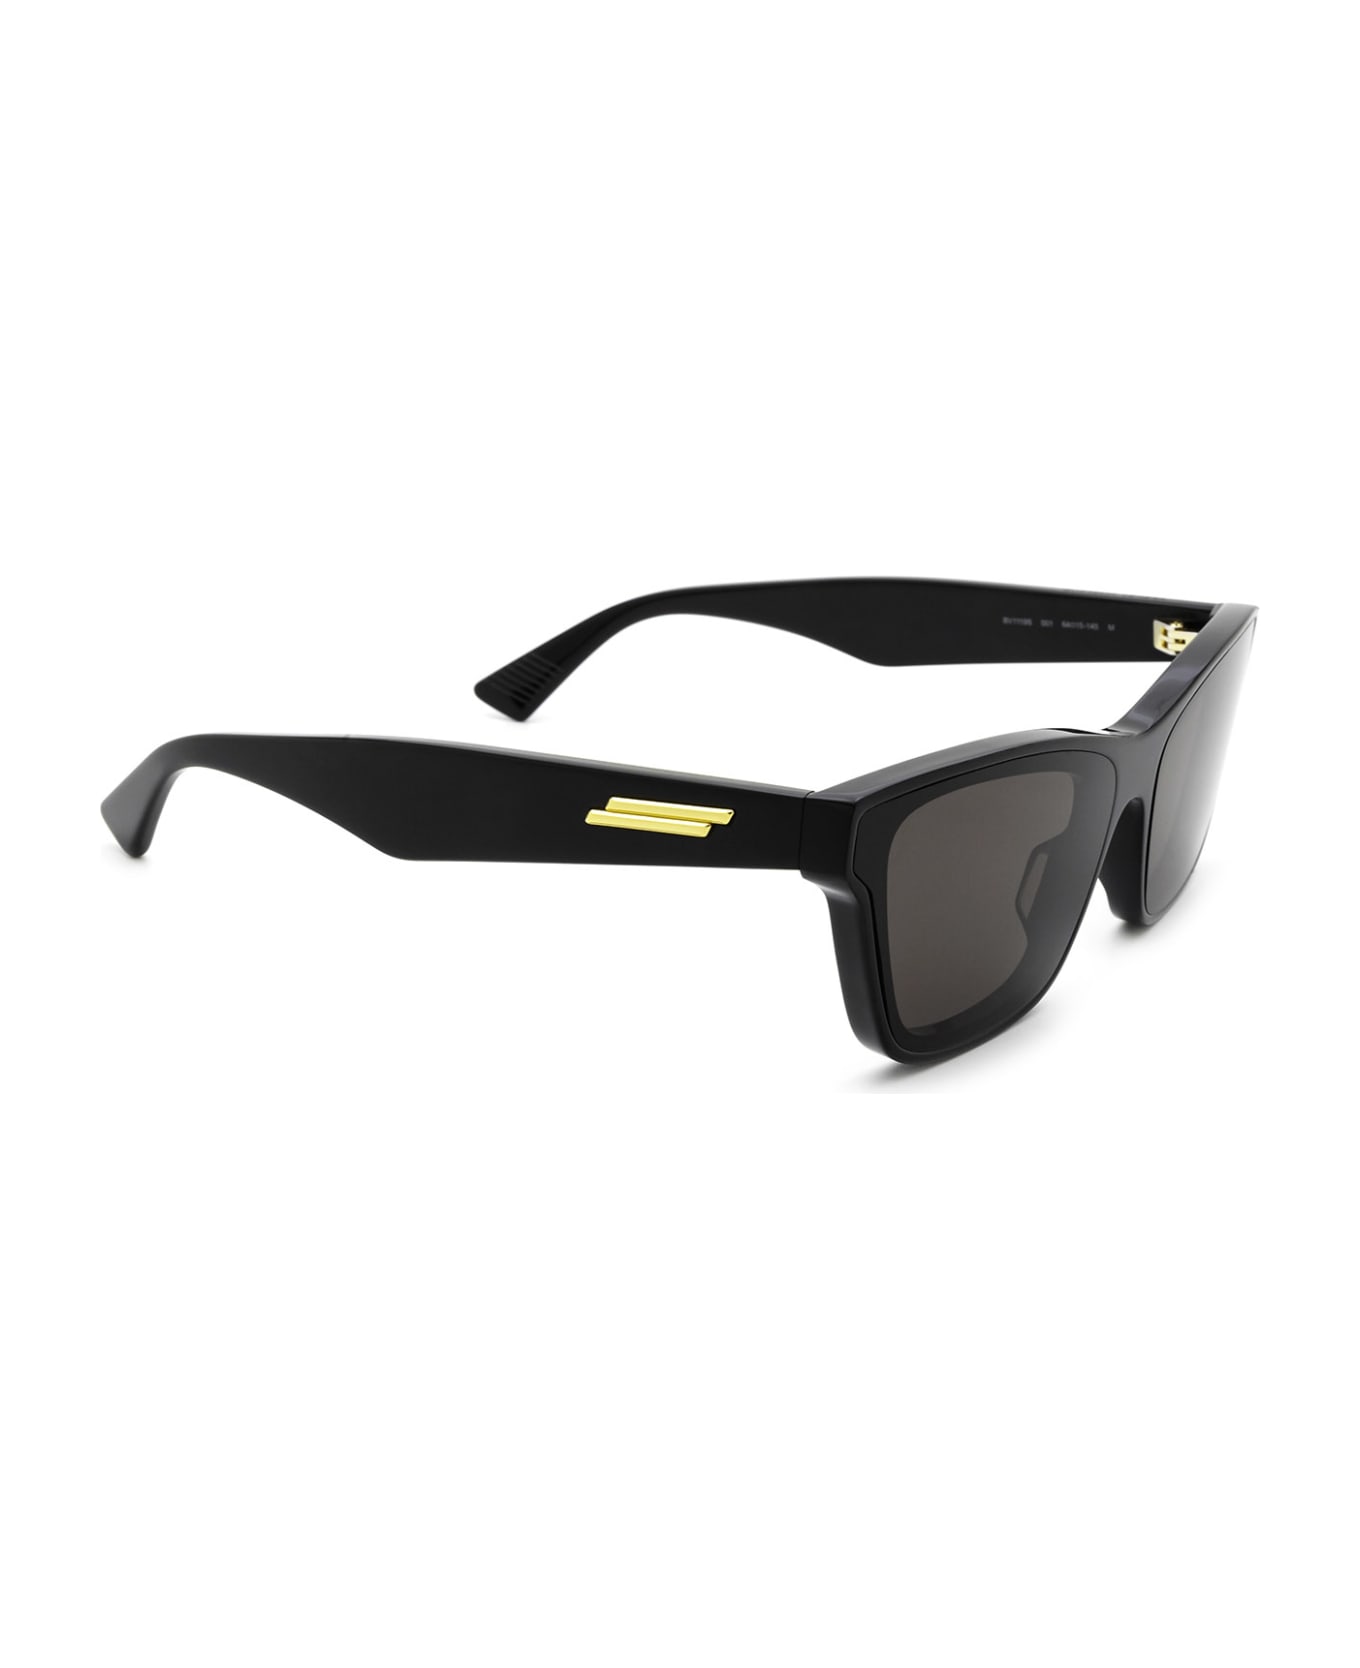 Bottega Veneta Eyewear Bv1119s Black Sunglasses - Black